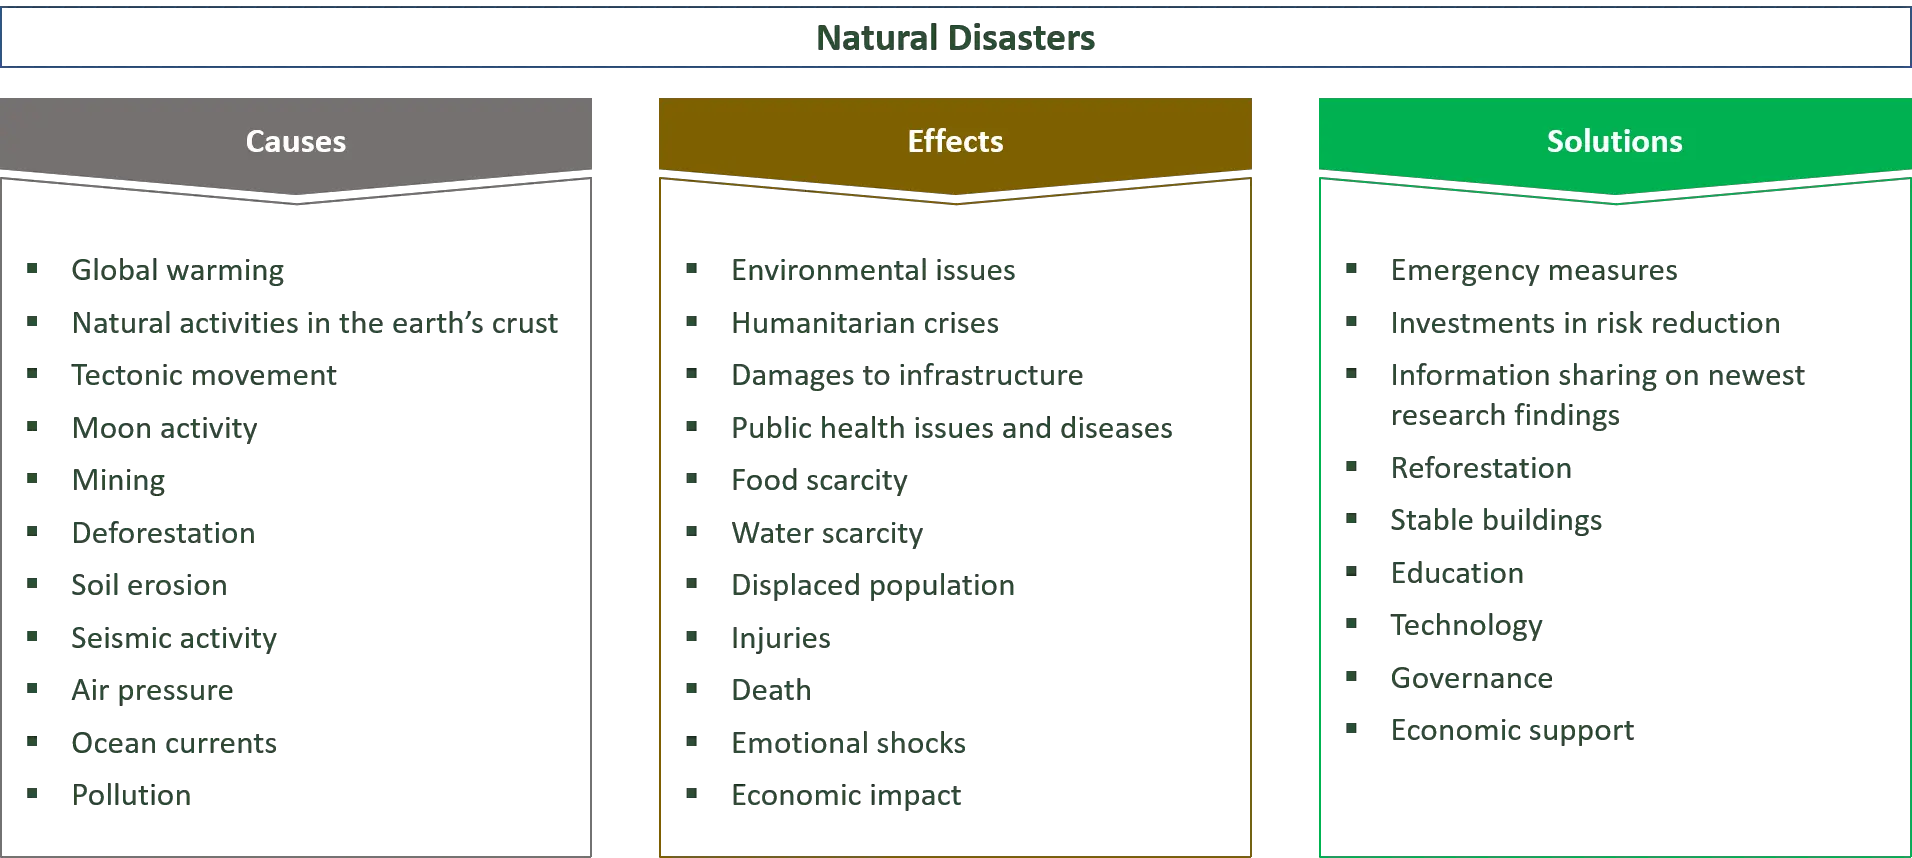 orsaker, effekter och lösningar för naturkatastrofer